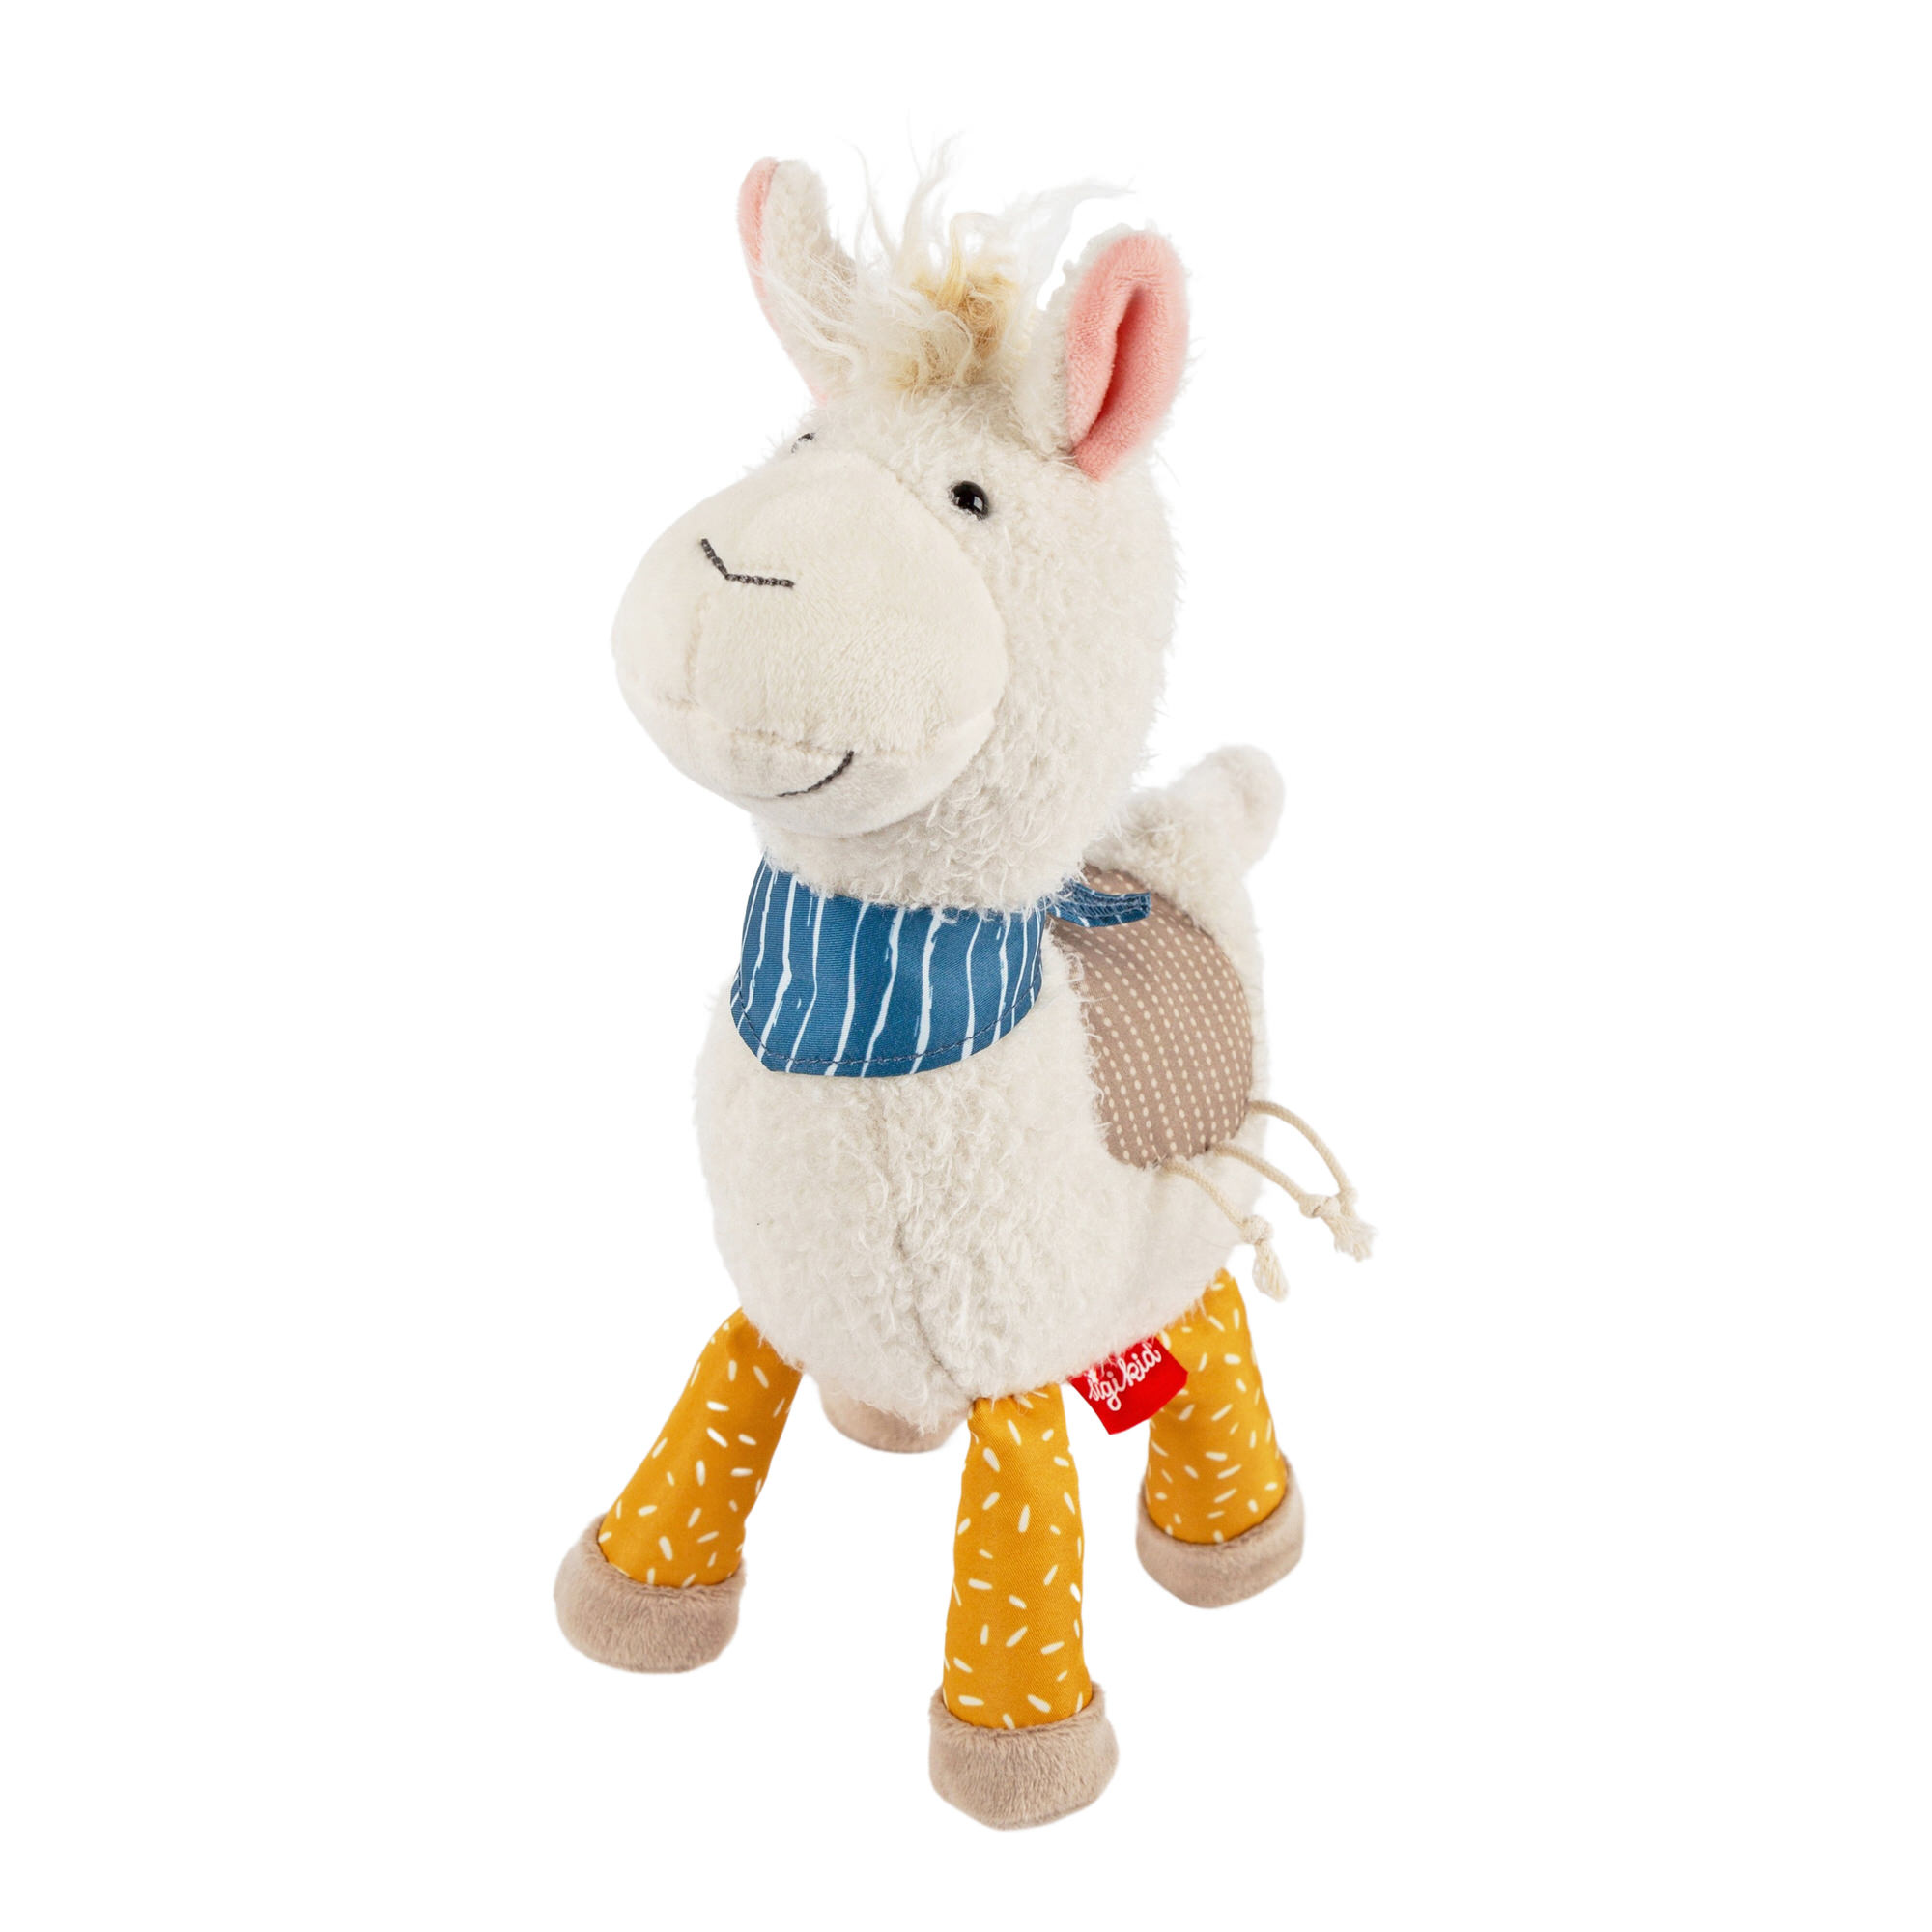 Patchwork soft toy llama